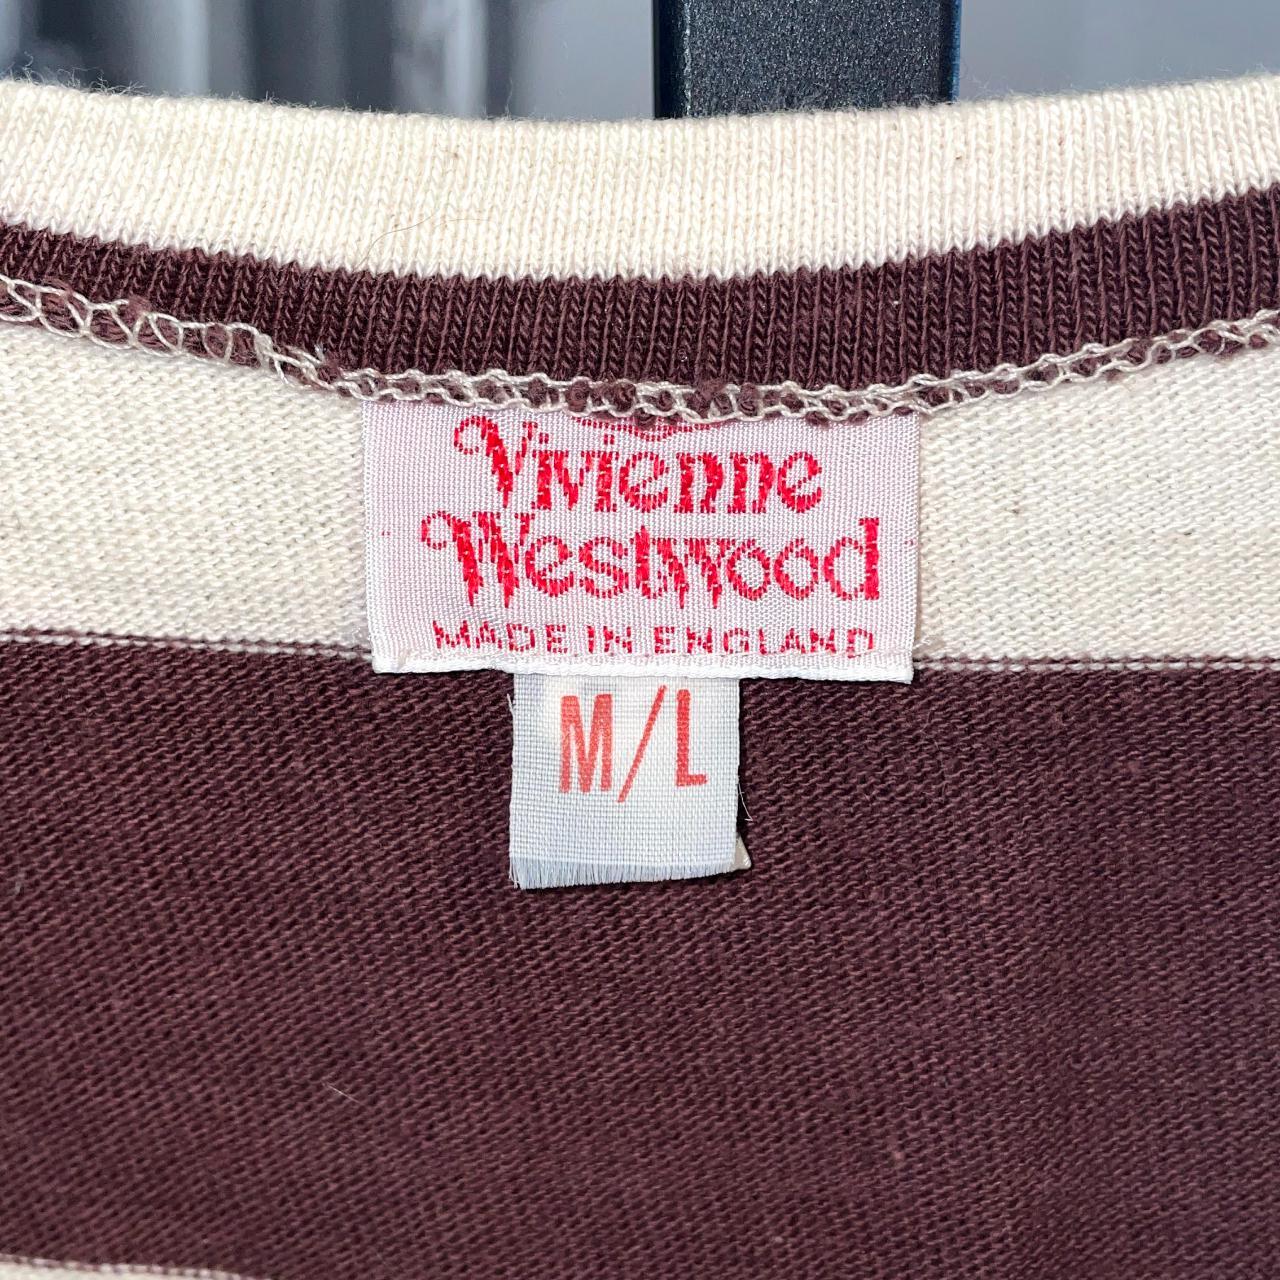 Vivienne Westwood Women's Tan and Brown Crop-top (2)